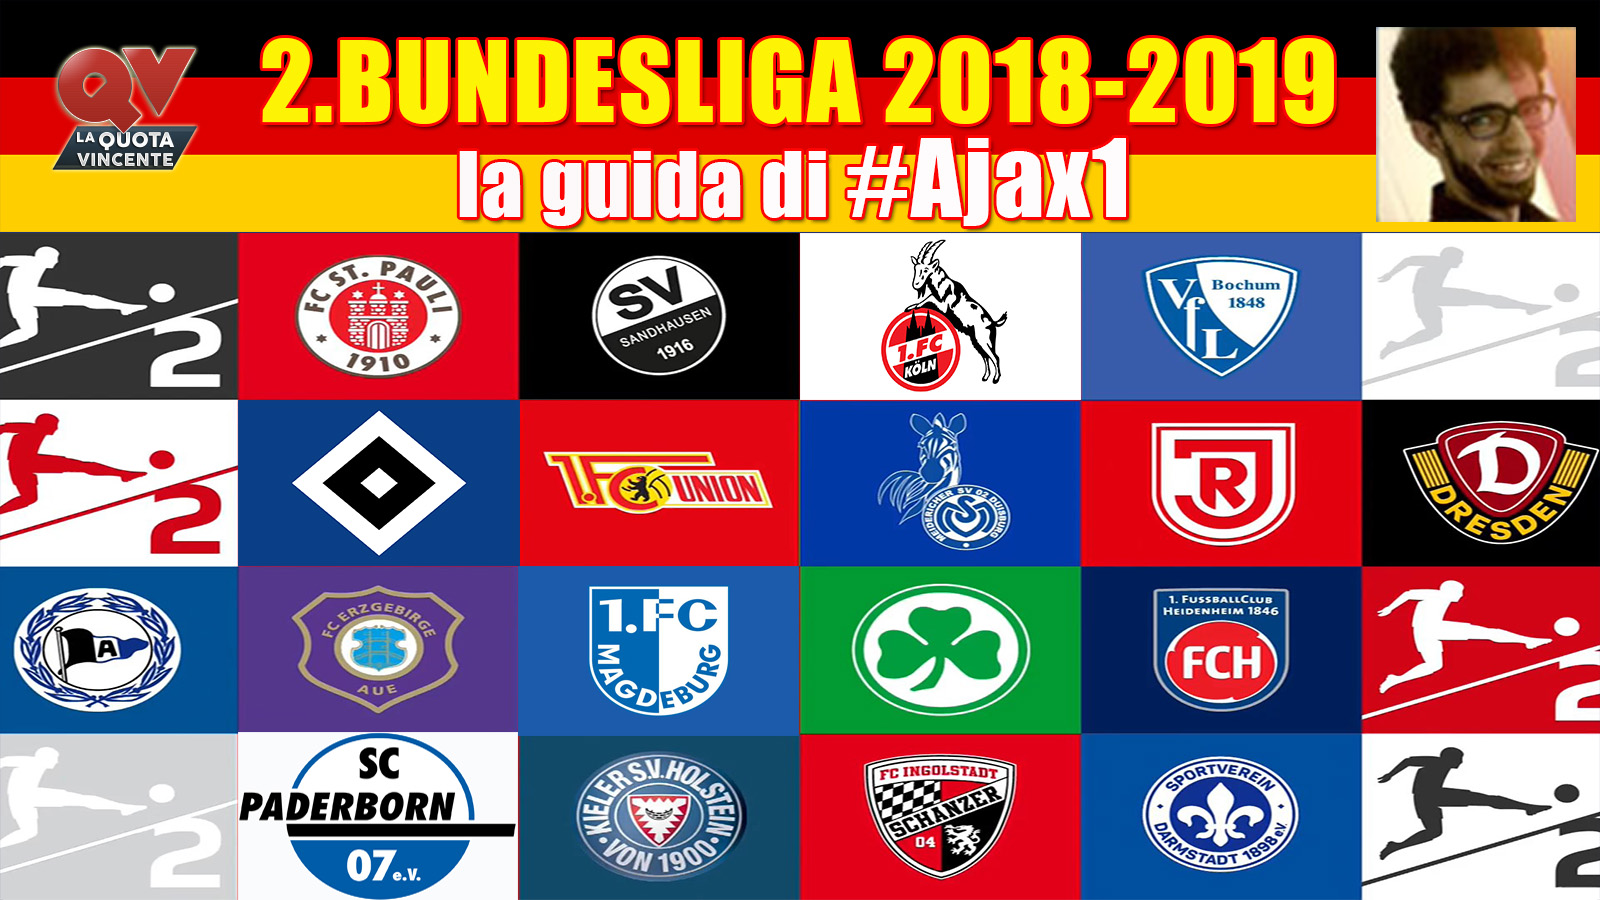 2.Bundesliga 2018-2019 guida